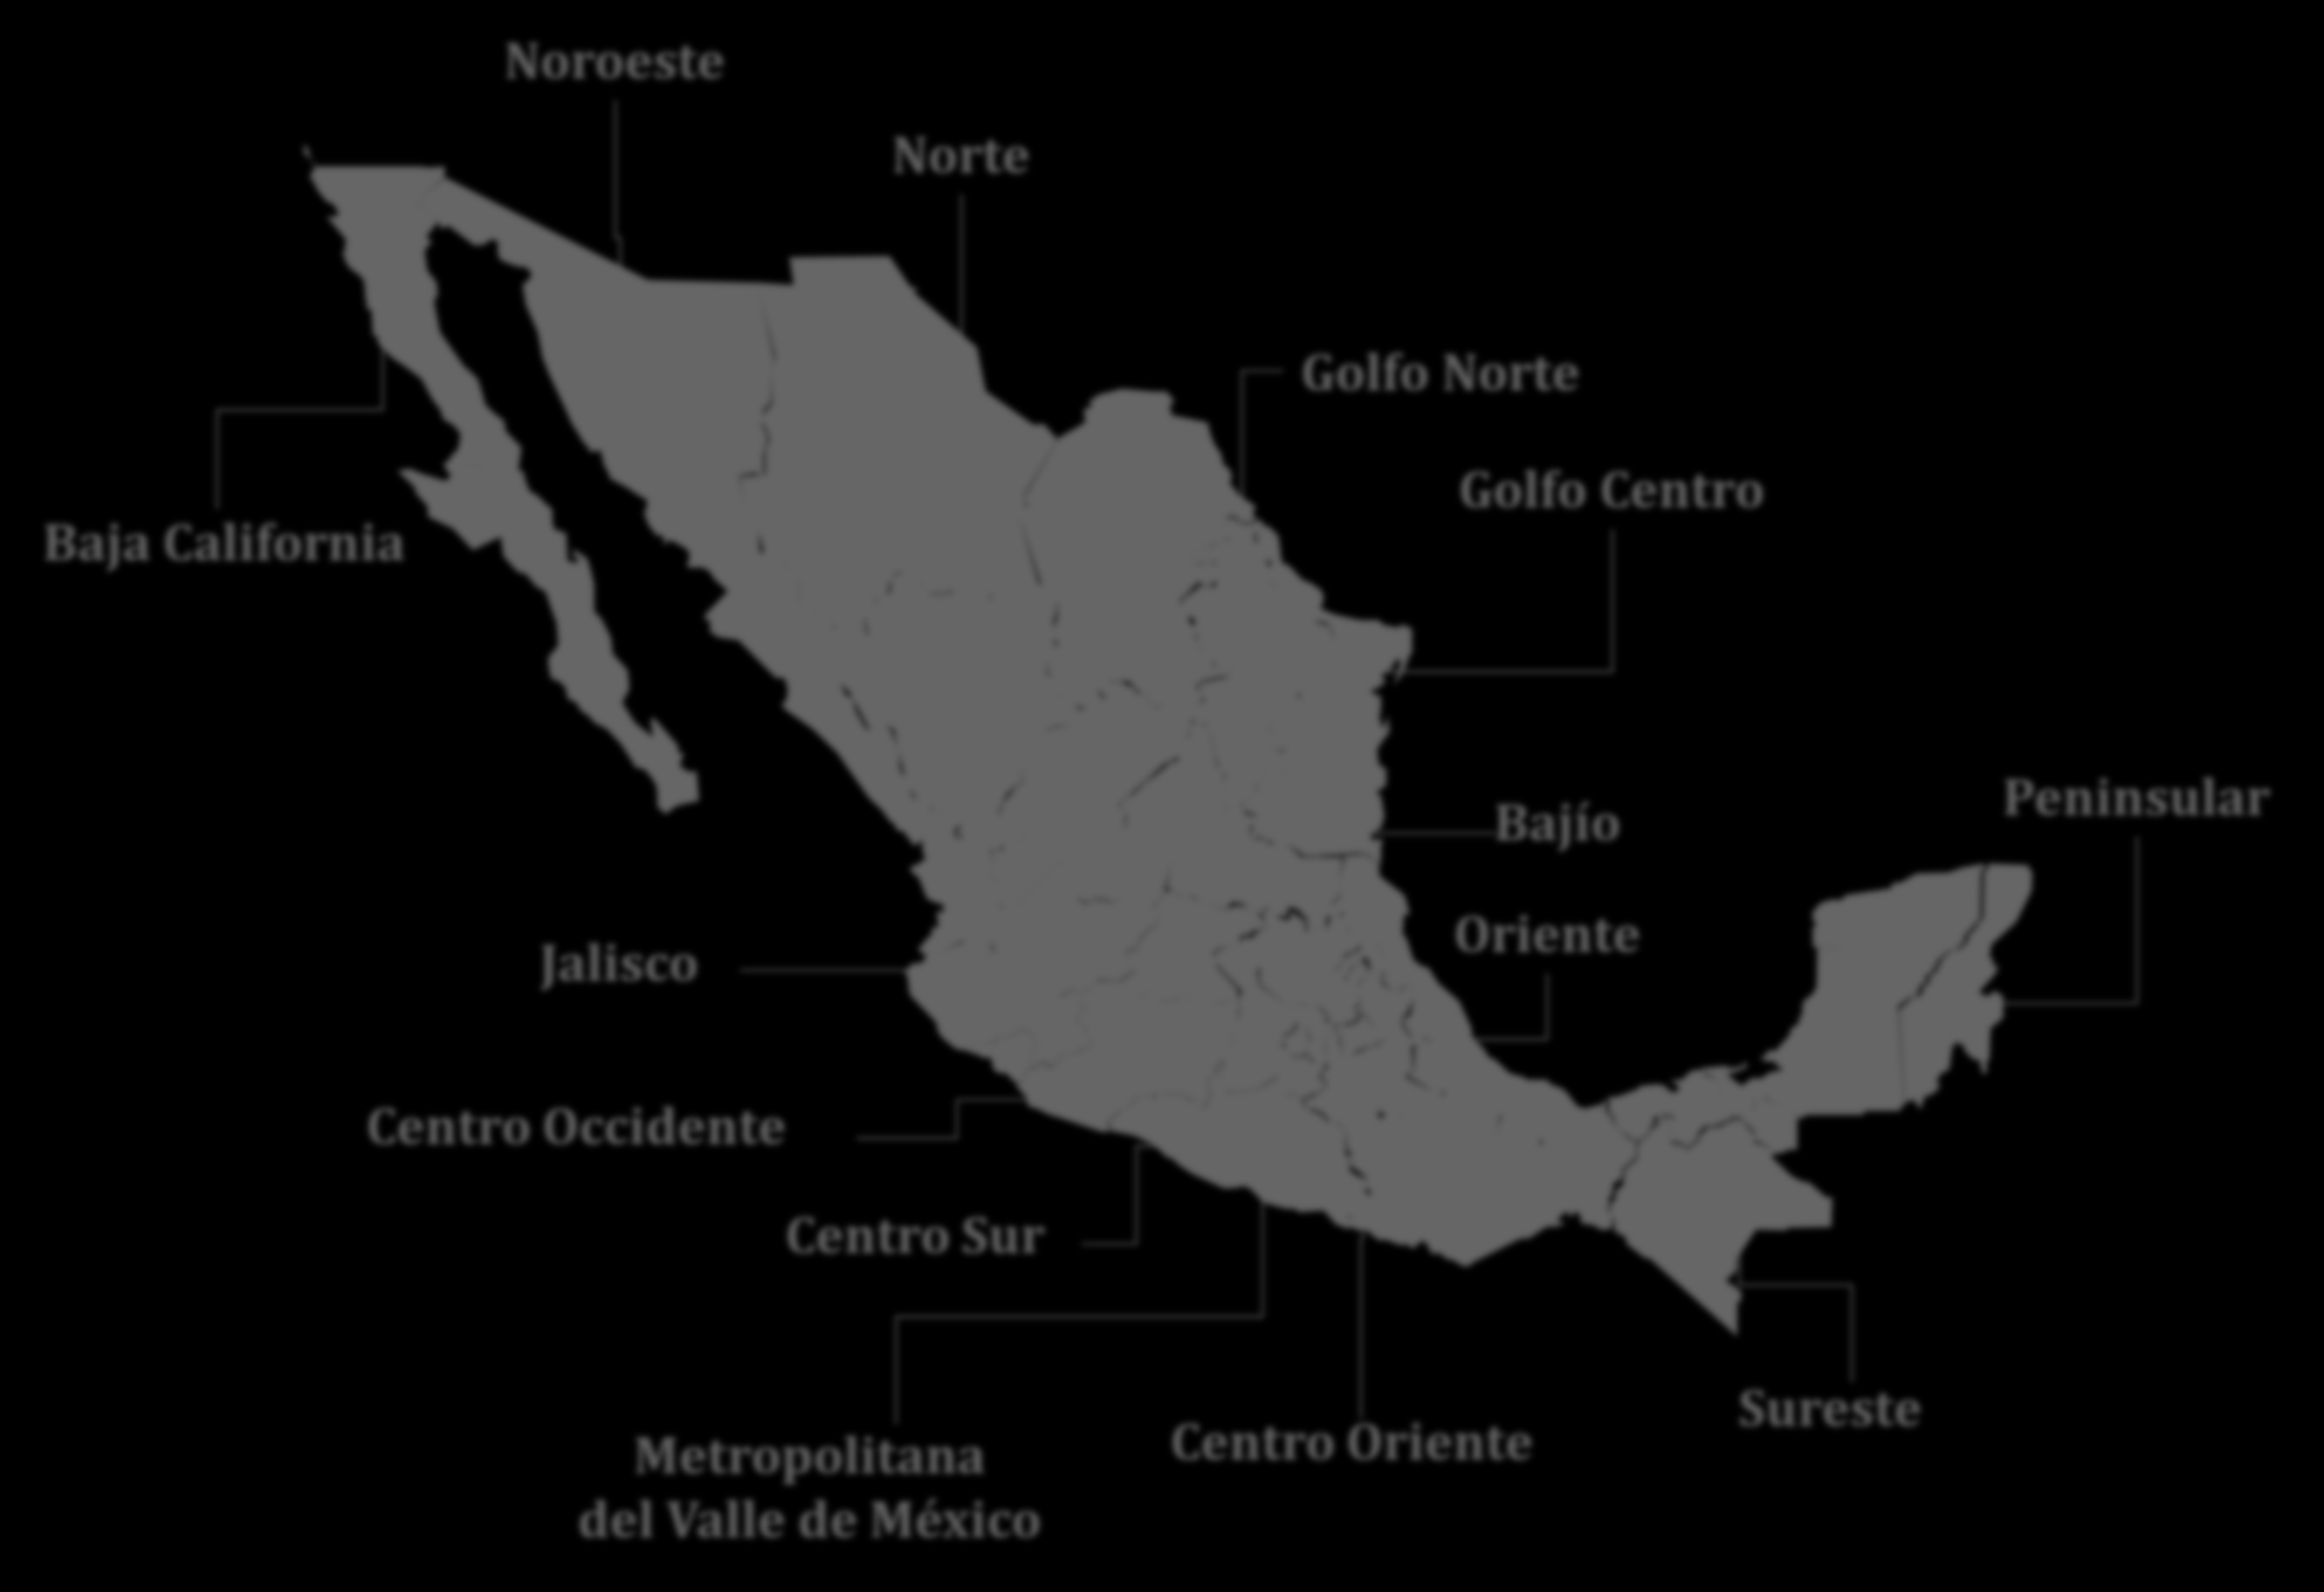 Estructura Regional FIDE Noroeste Norte 14 Delegaciones Regionales 50 Oficinas de Atención Golfo Norte Baja California Golfo